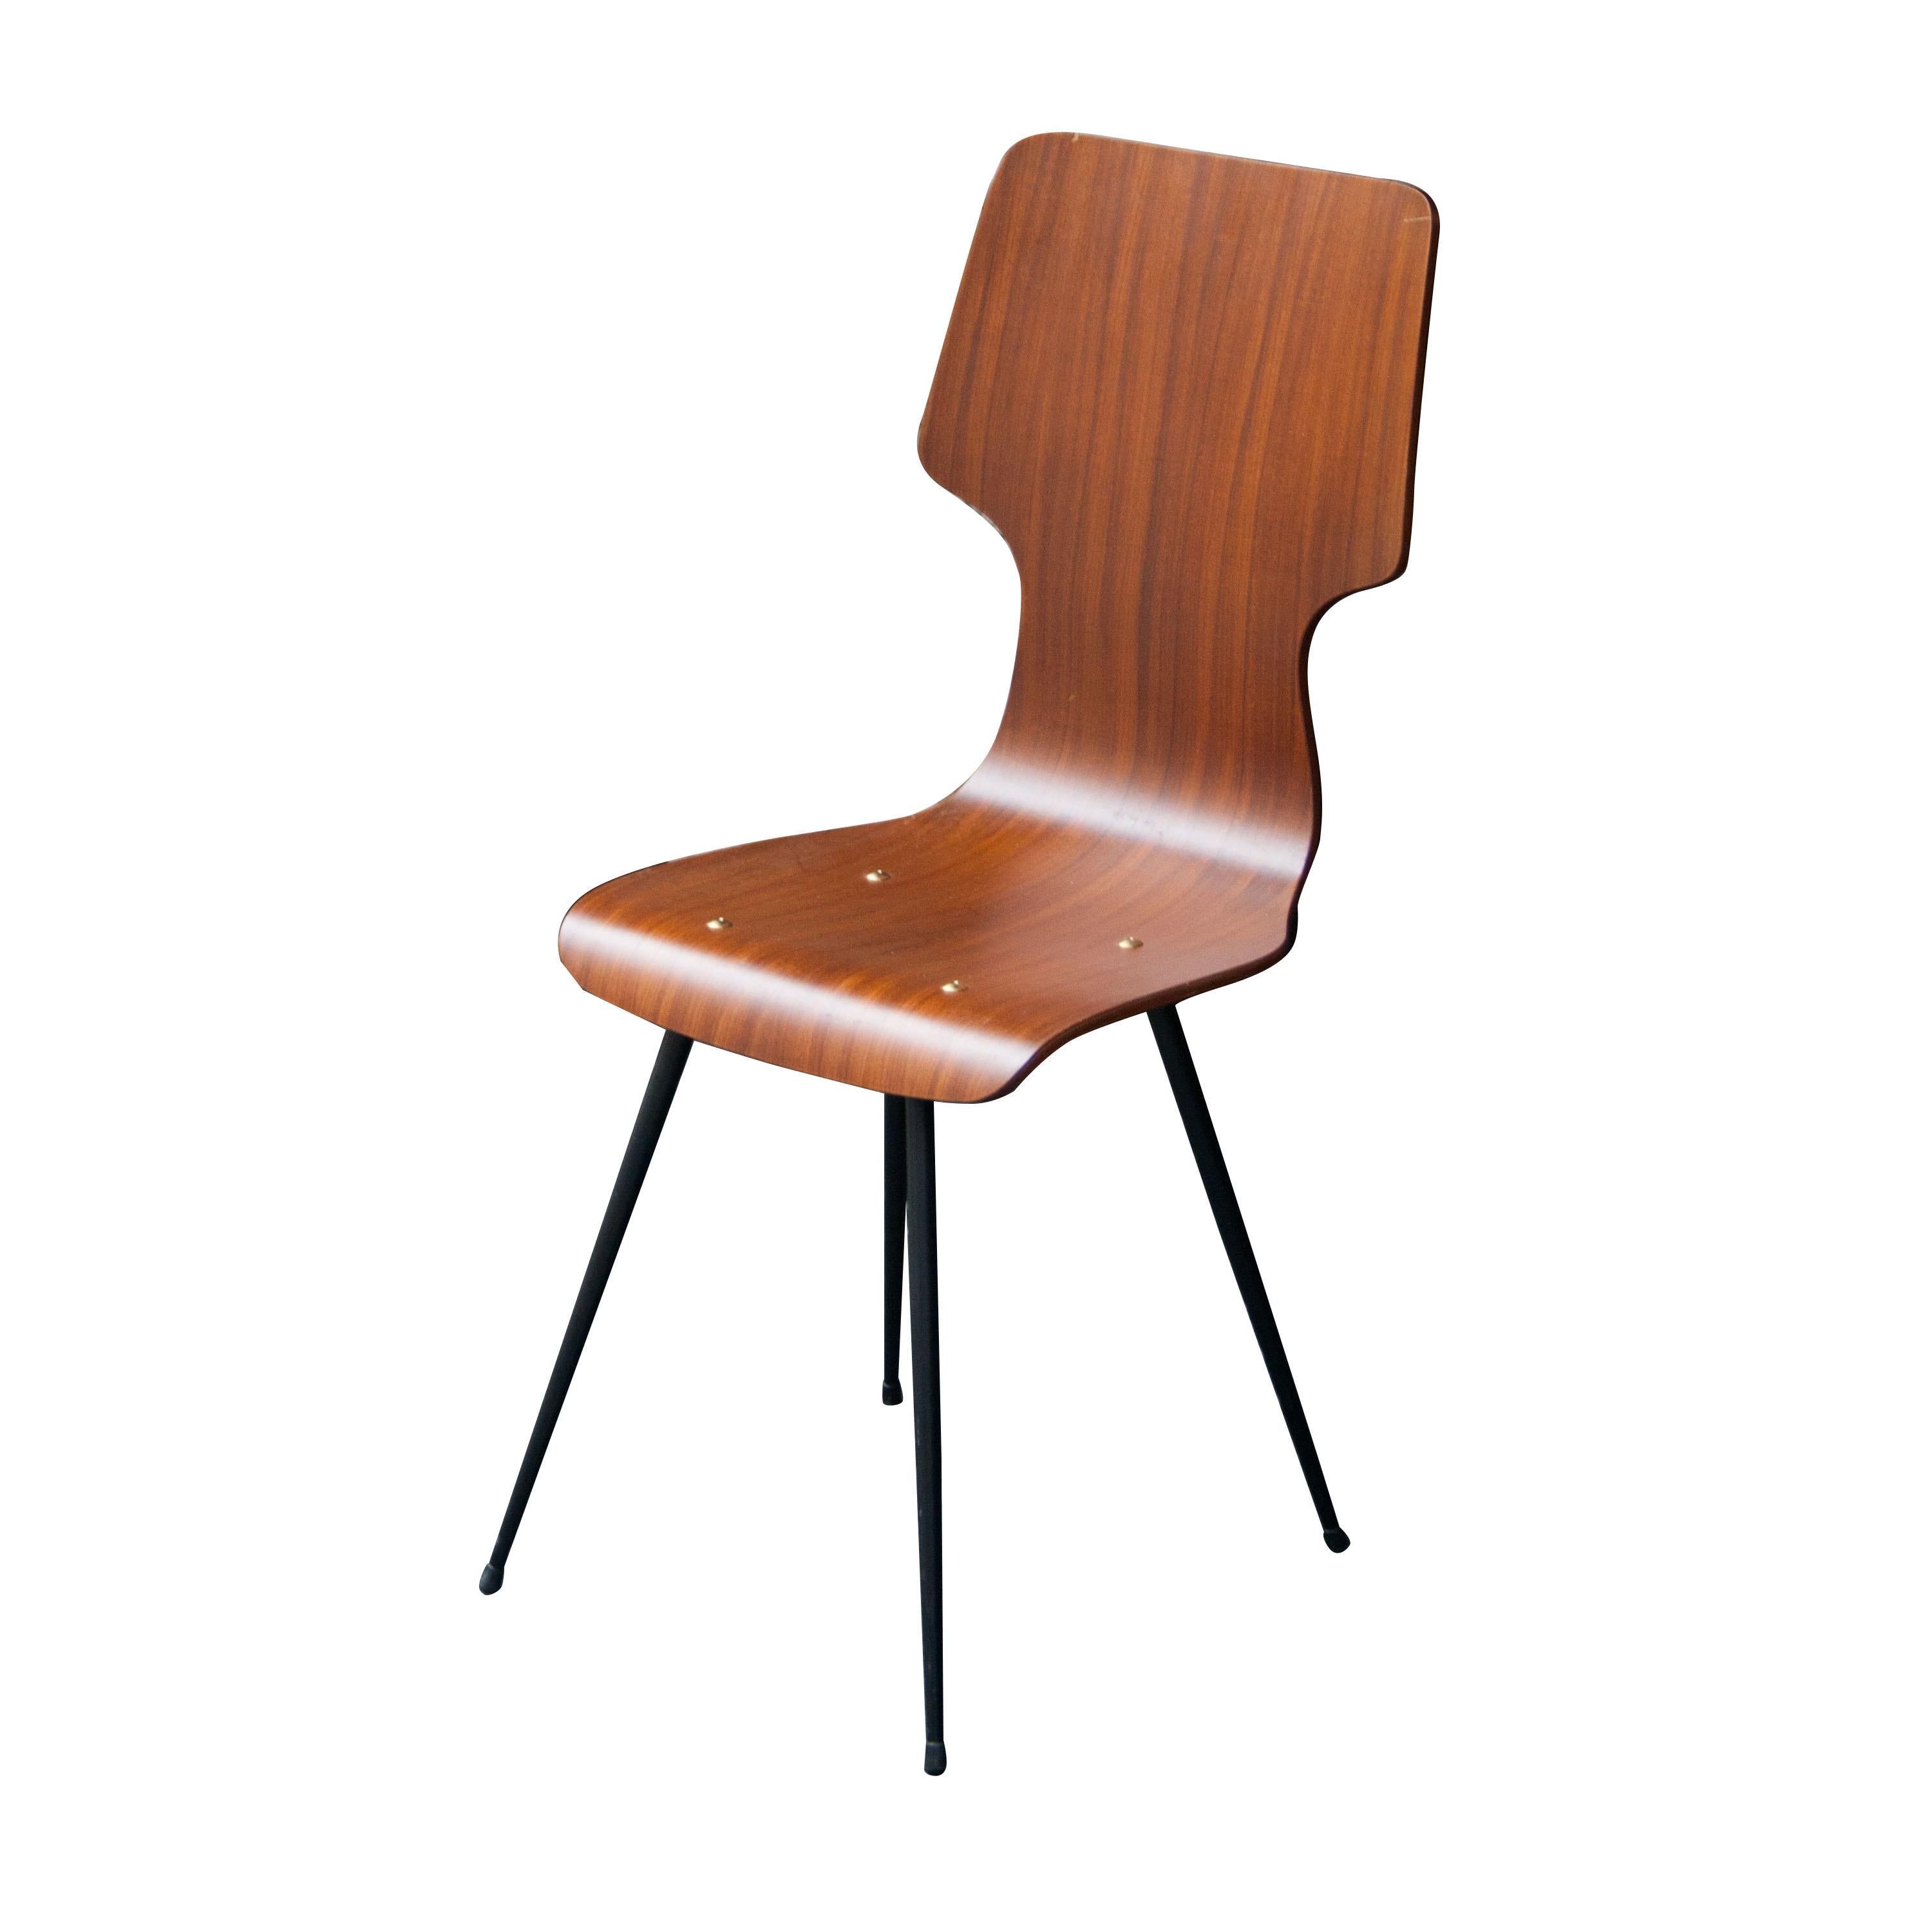 Ensemble de six chaises conçues par Carlo Ratti. Structure métallique laquée noire, assise et dossier en bois de teck.